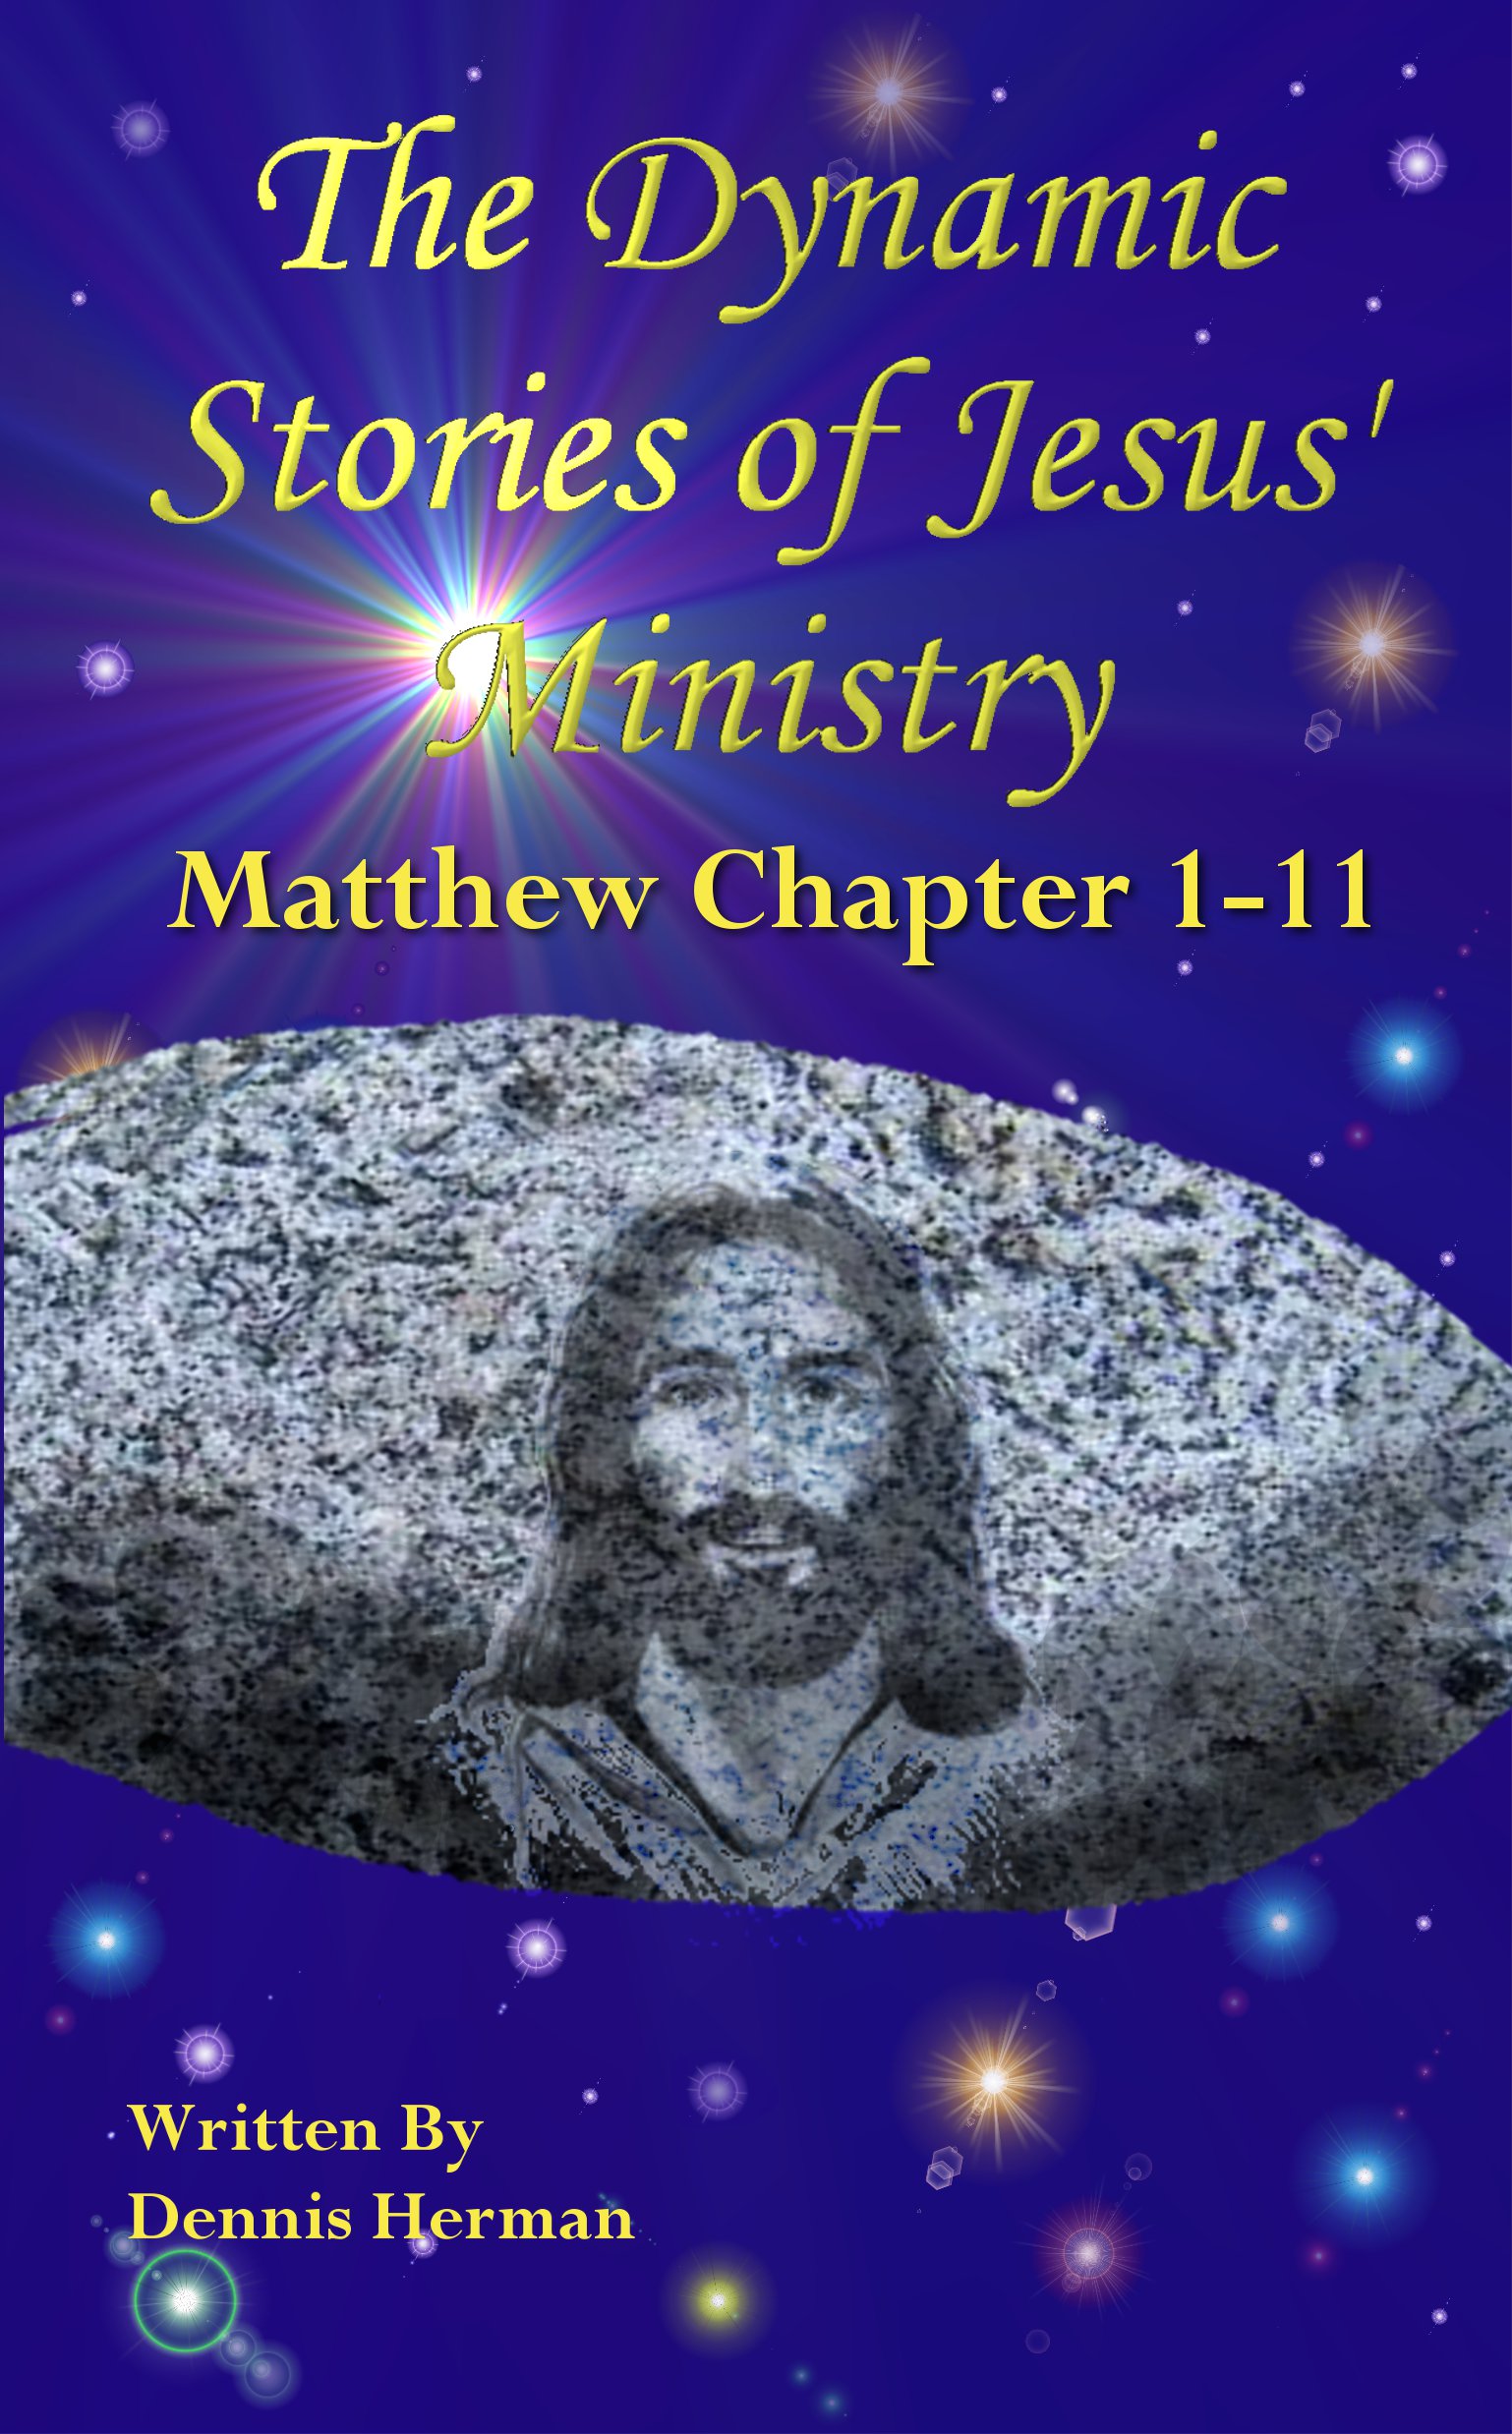 Stories from the Gospel of Matthew